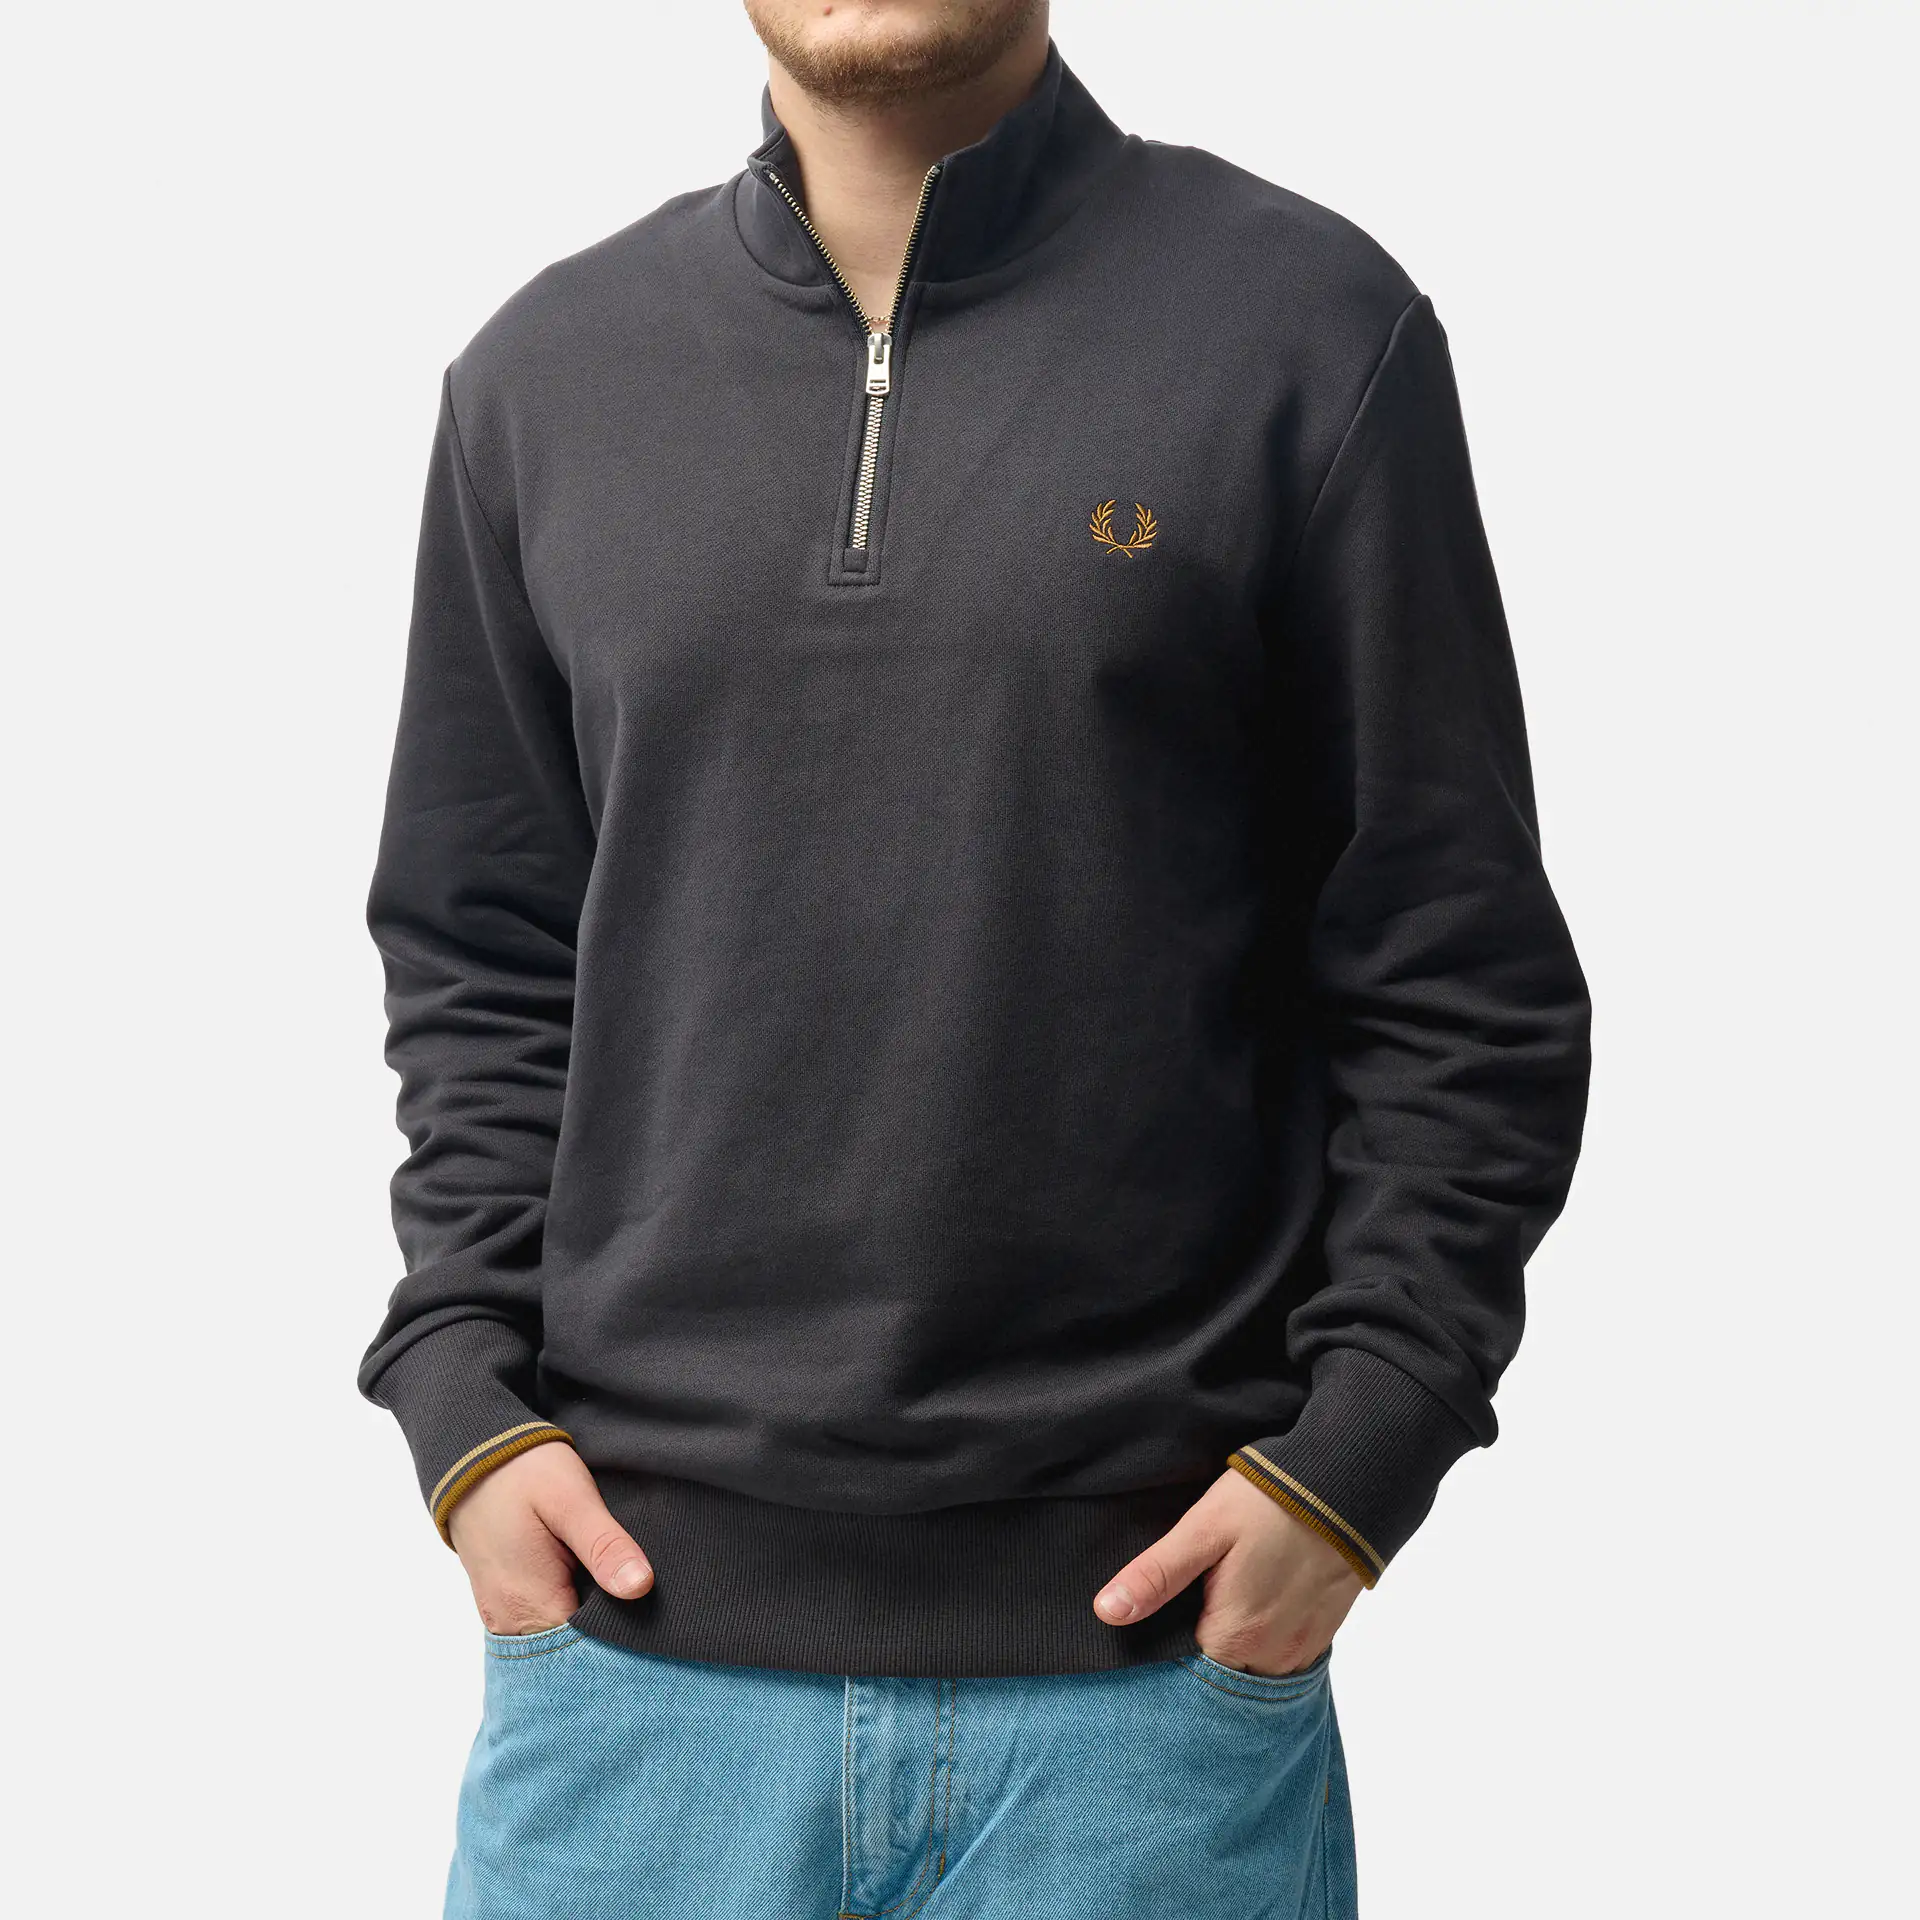 Pullover für Männer online kaufen ✧ FORWARD bei FAST